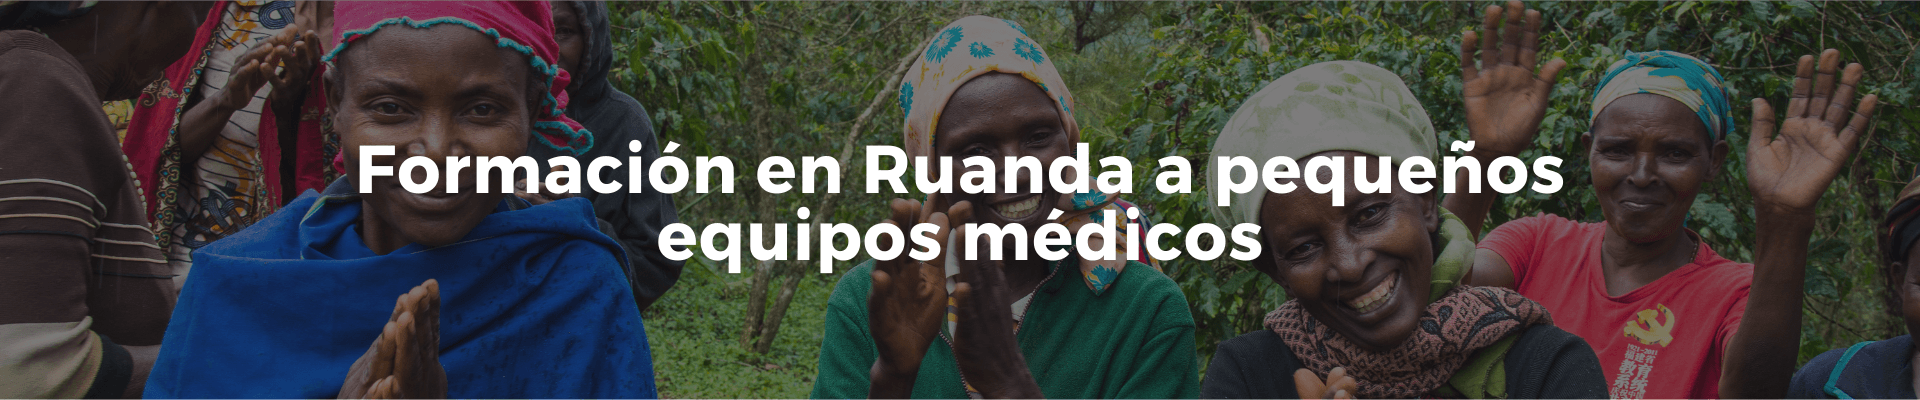 Campaña Formación en Ruanda a pequeños equipos de médicos